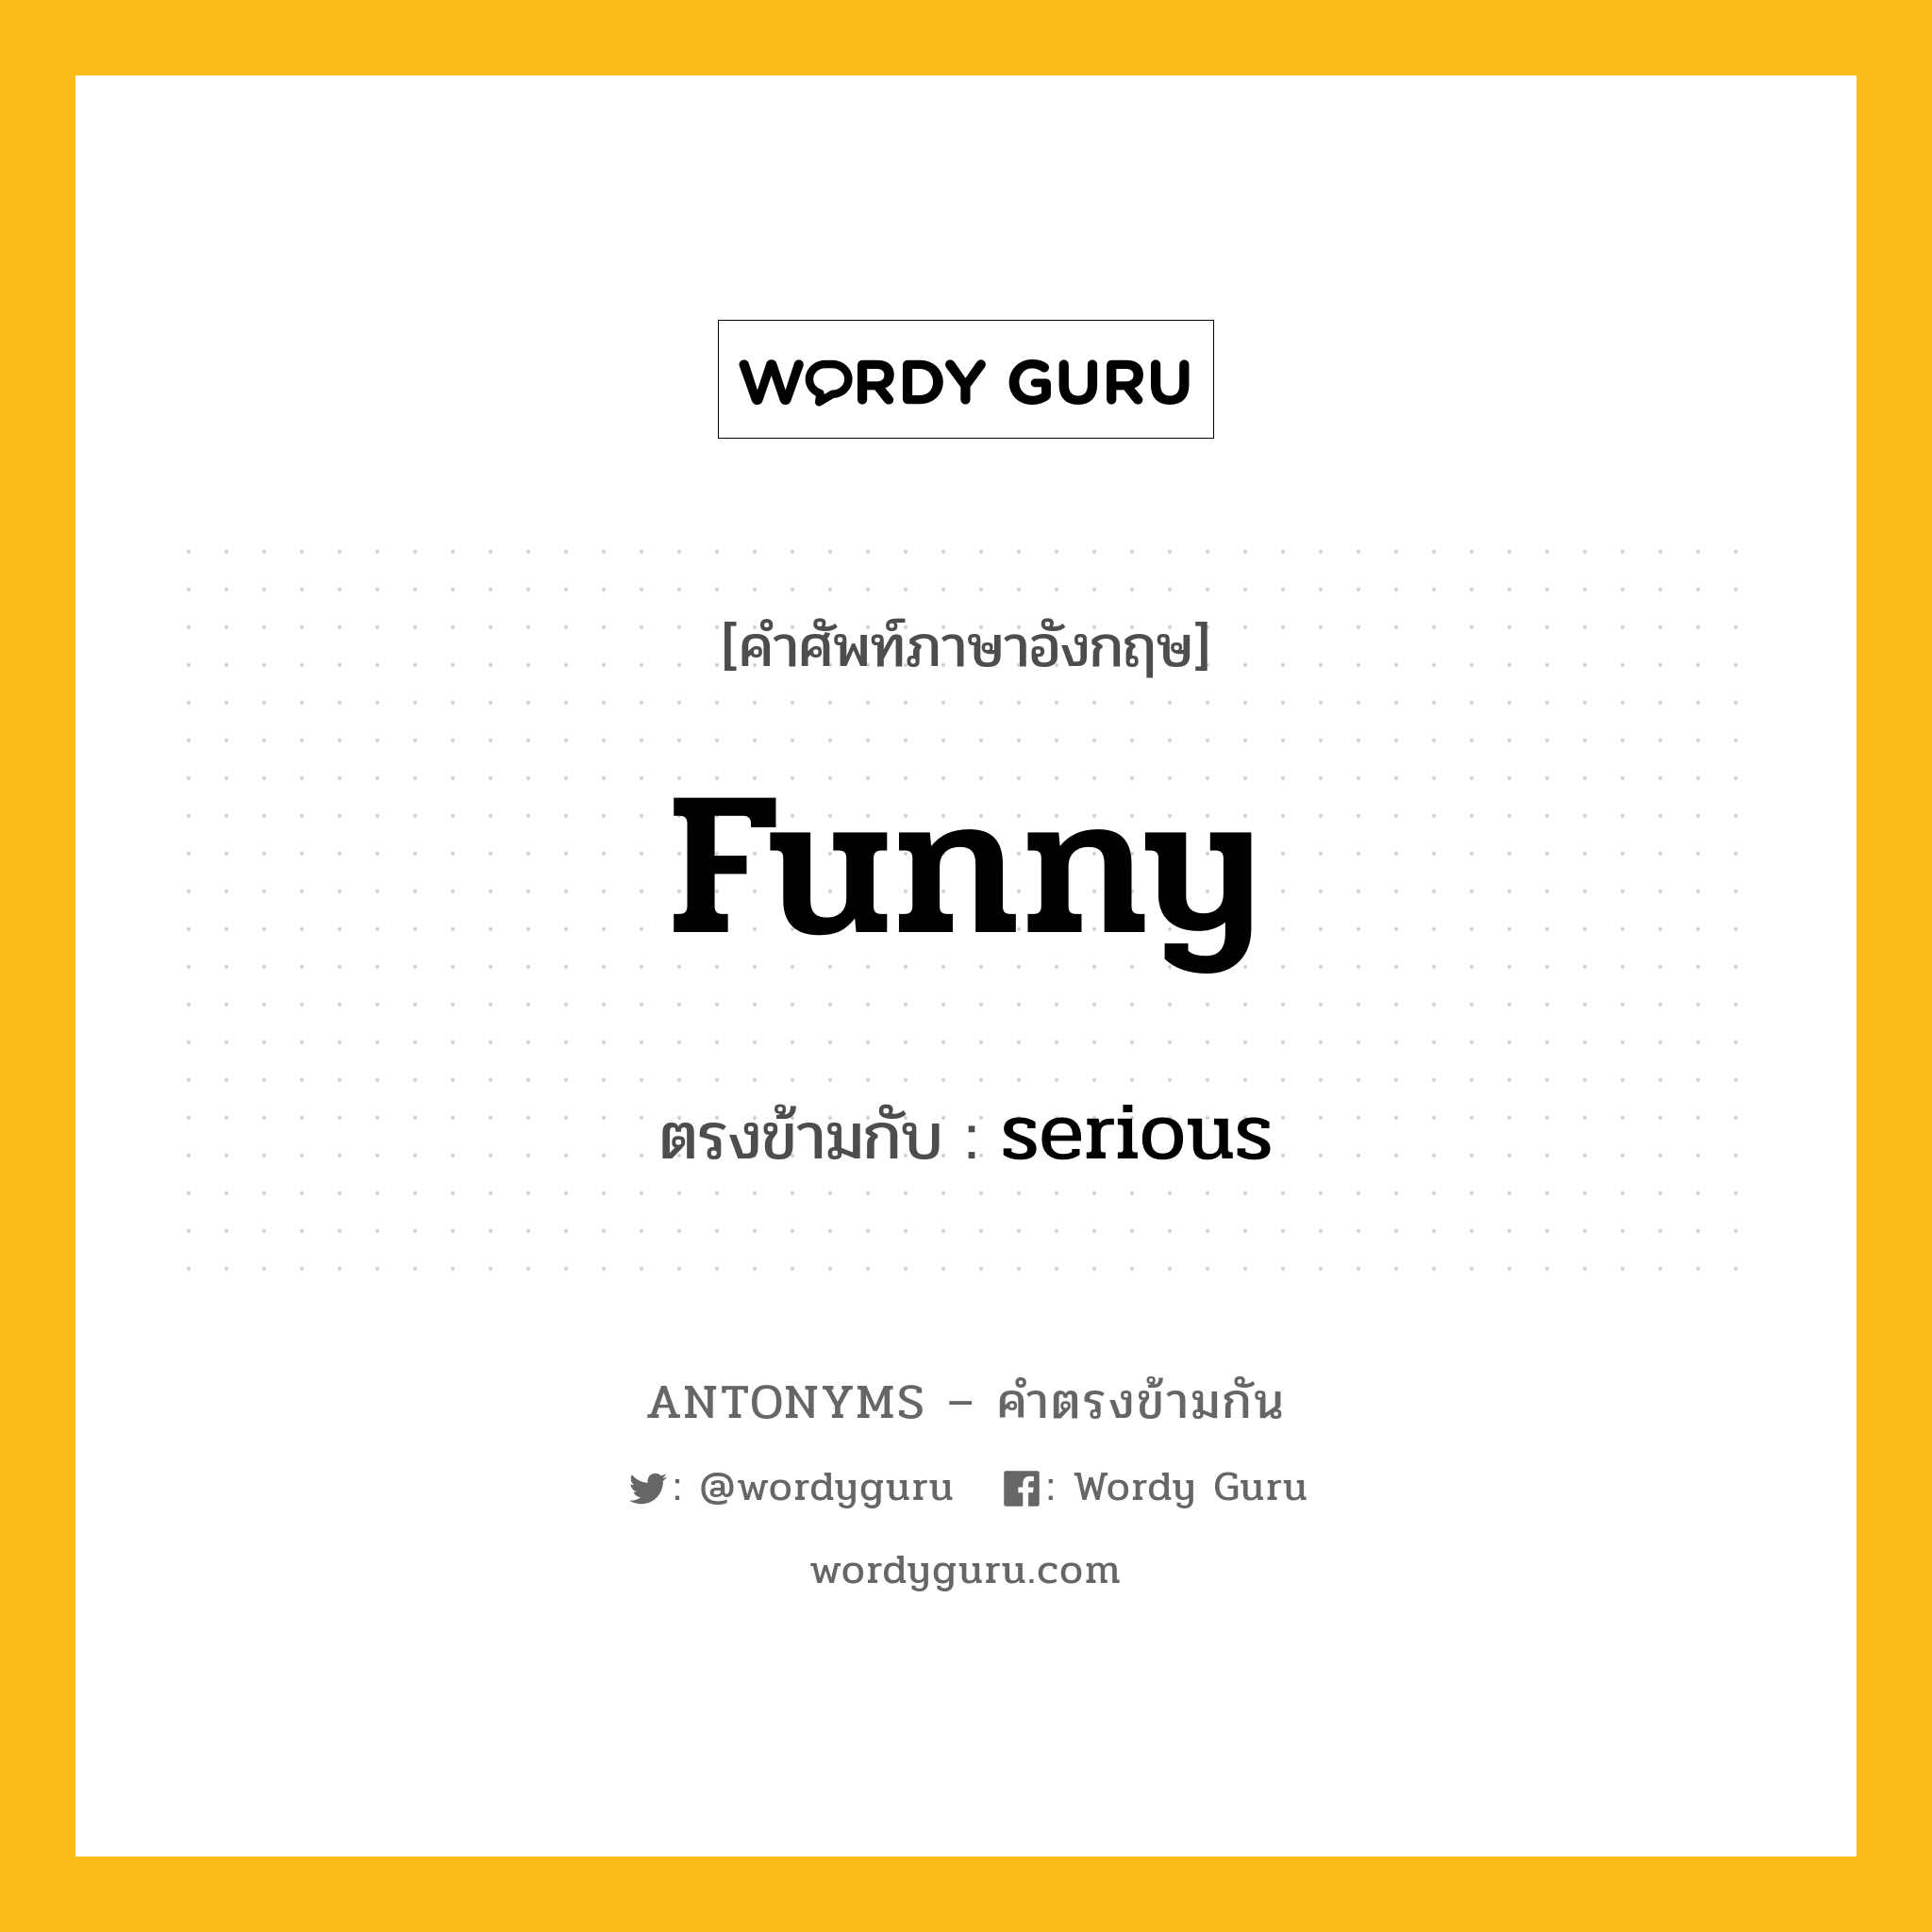 funny เป็นคำตรงข้ามกับคำไหนบ้าง?, คำศัพท์ภาษาอังกฤษที่มีความหมายตรงข้ามกัน funny ตรงข้ามกับ serious หมวด serious